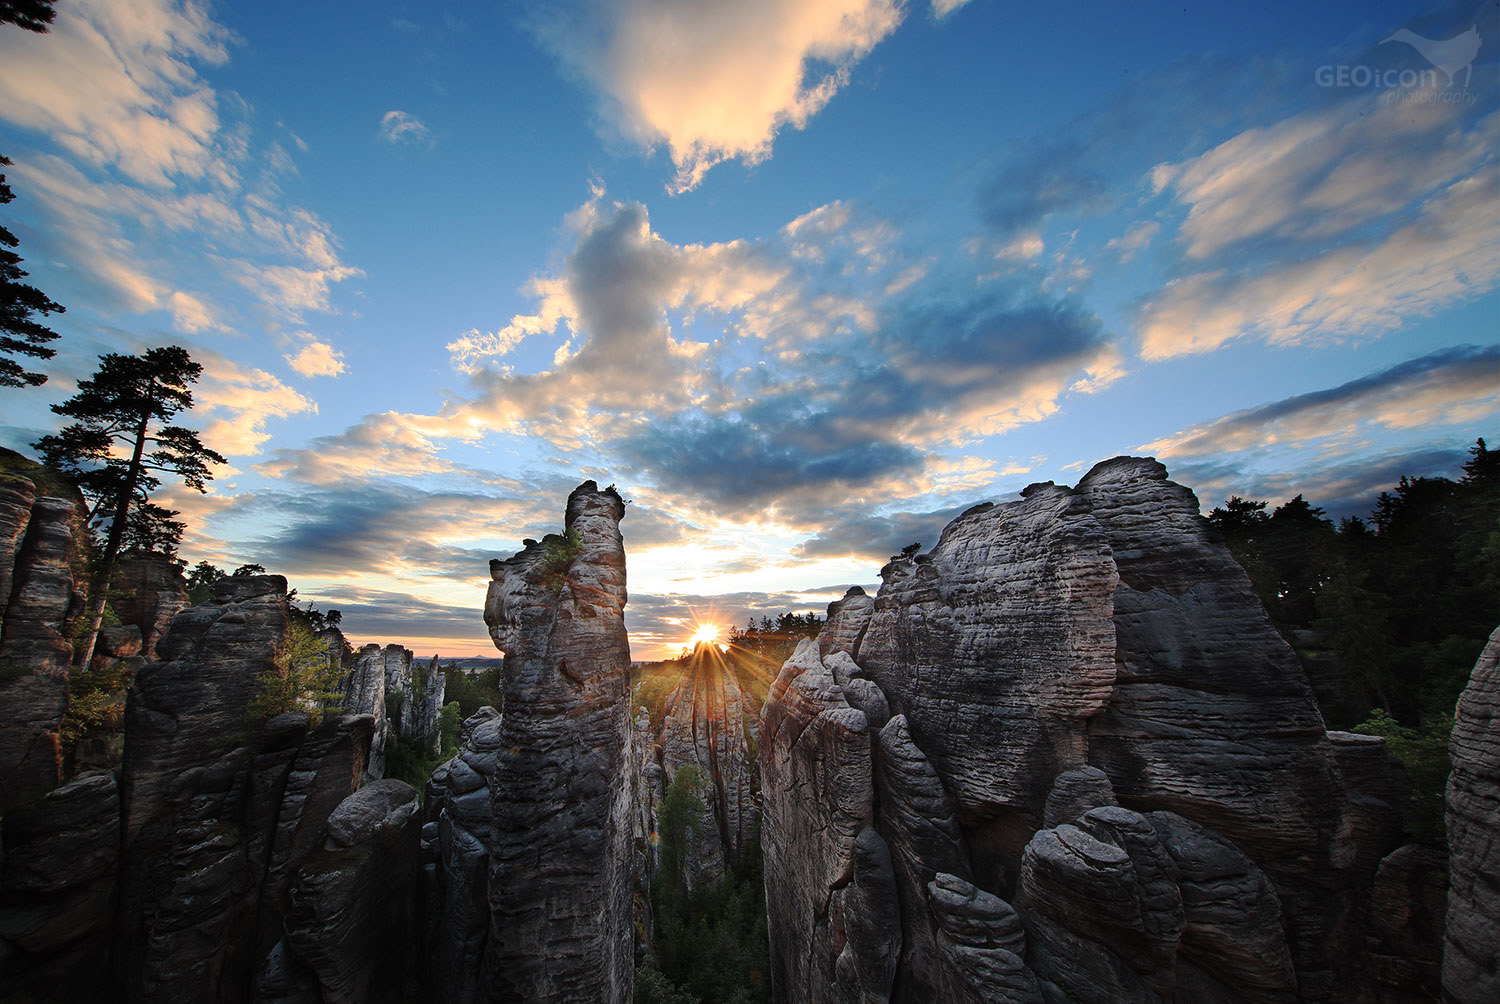 Prachov rocks, Bohemian paradise, Czech republic.